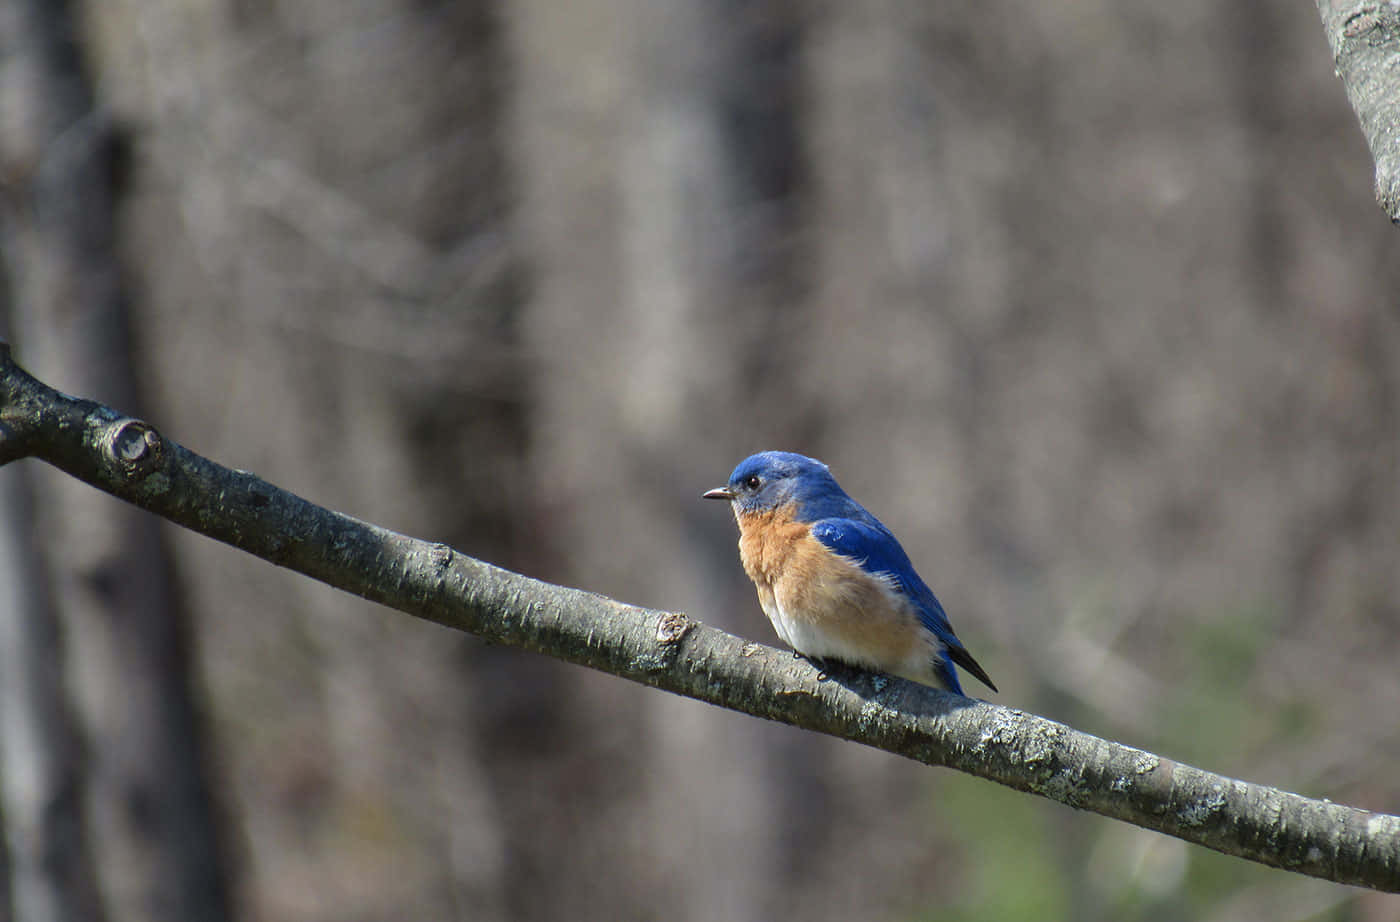 A Stunning Bluebird perching on a branch